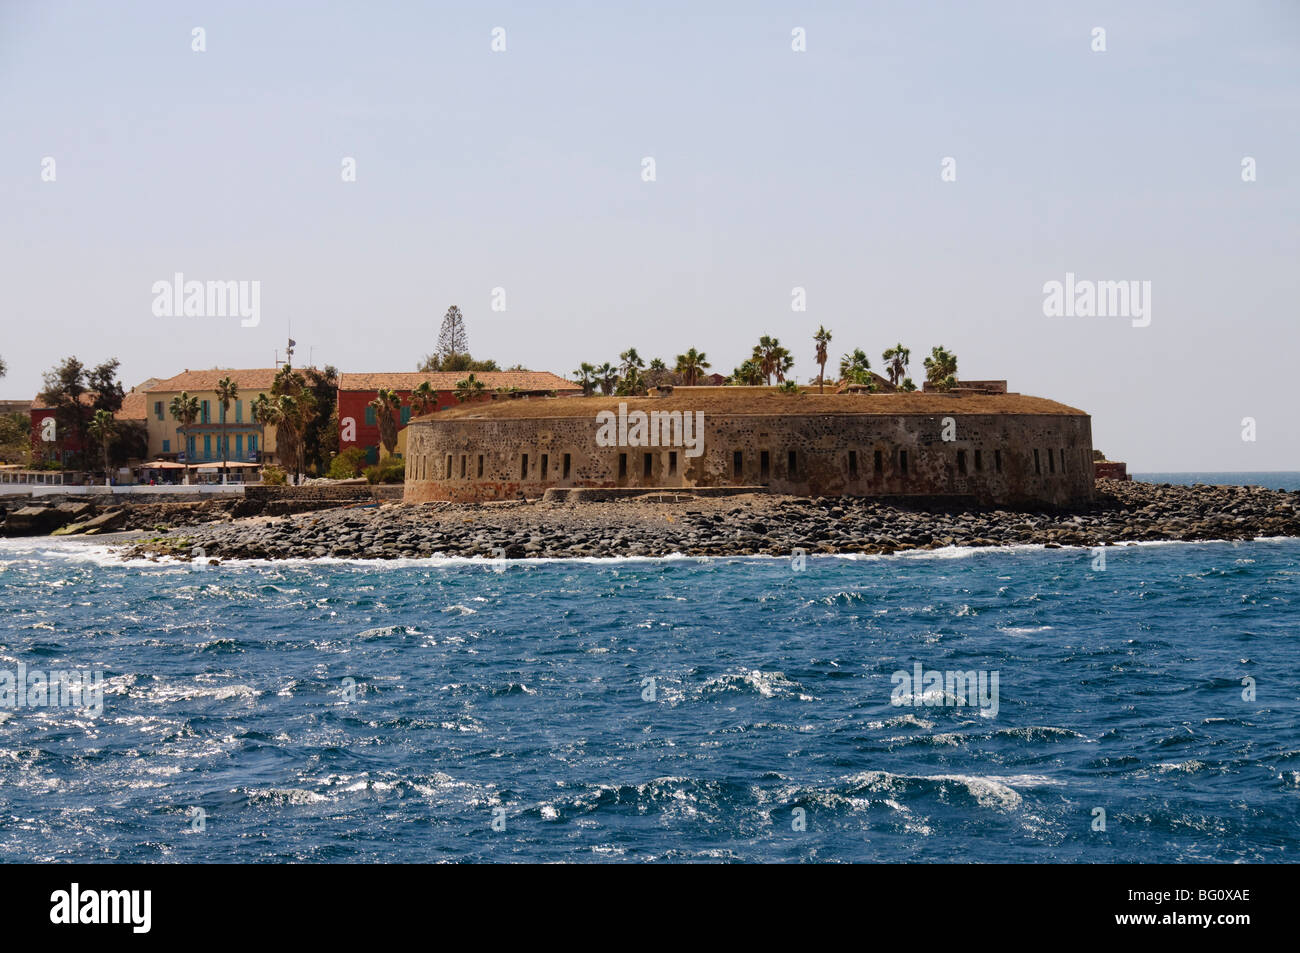 La Isla de Gorée, famosa por su papel en la esclavitud, Sitio del Patrimonio Mundial de la UNESCO, cerca de Dakar, Senegal, África occidental, África Foto de stock